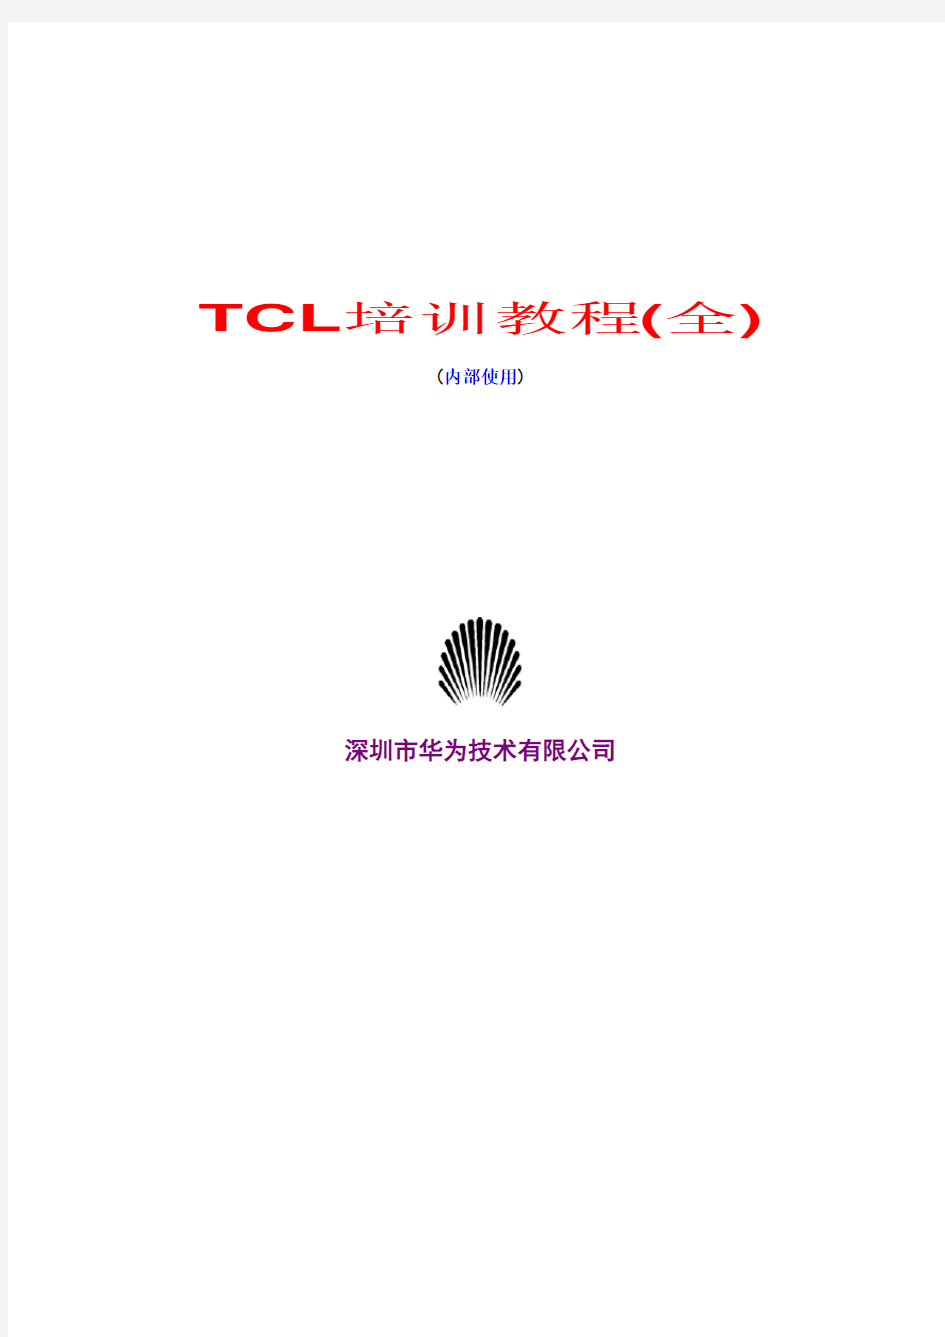 eetop cn TCL培训教程 华为内部资料